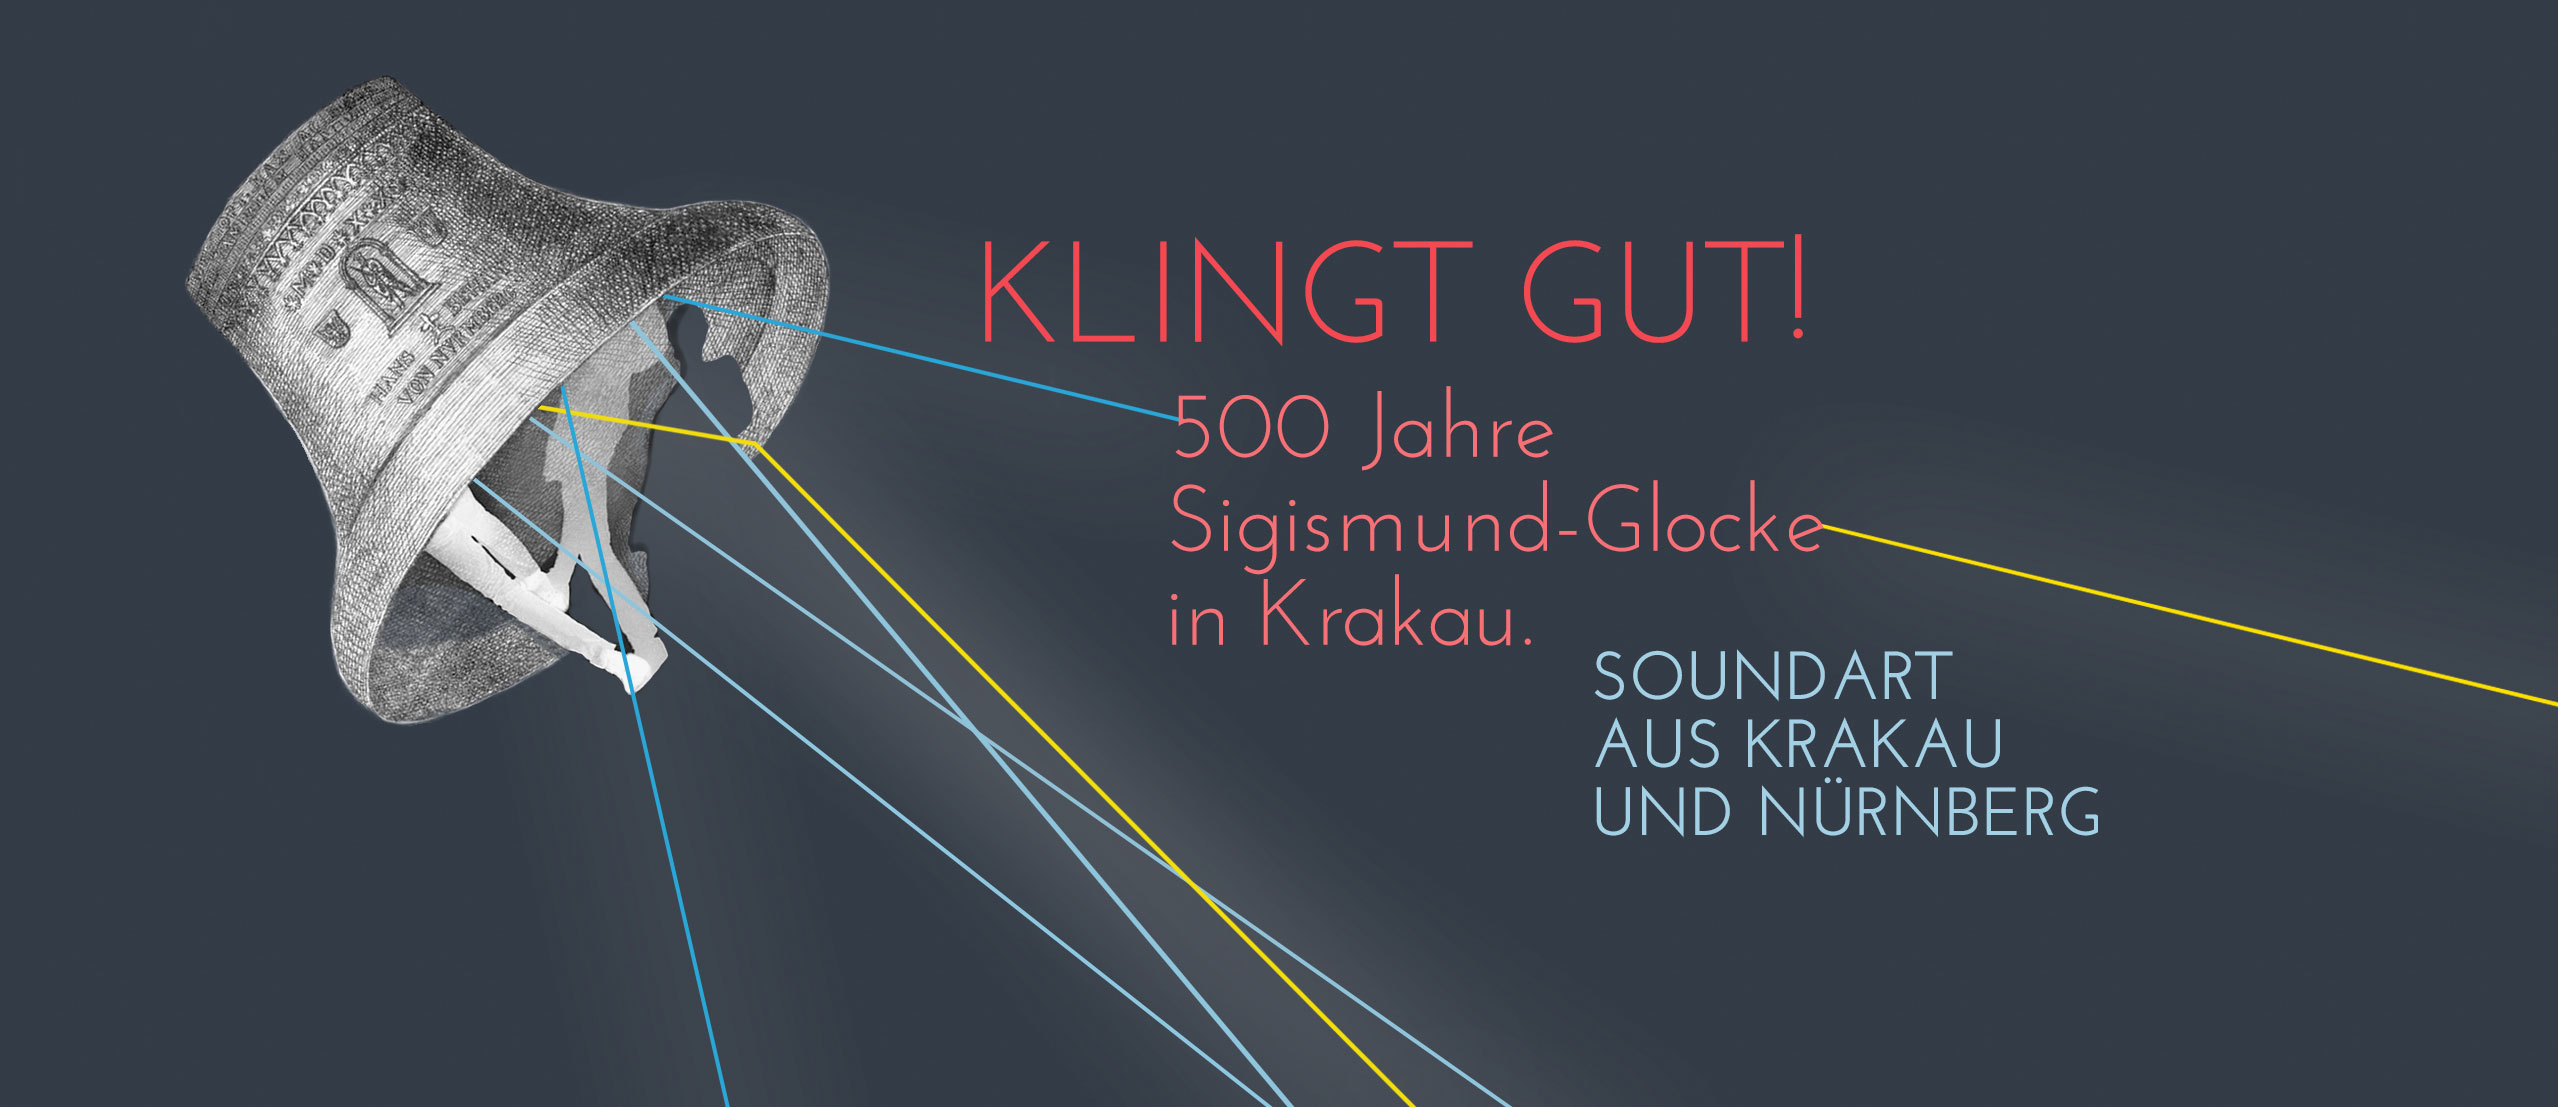 KLINGT GUT! 500 Jahre Sigismund-GLocke in Krakau | SOUNDART AUS KRAKAU UND NURNBERG